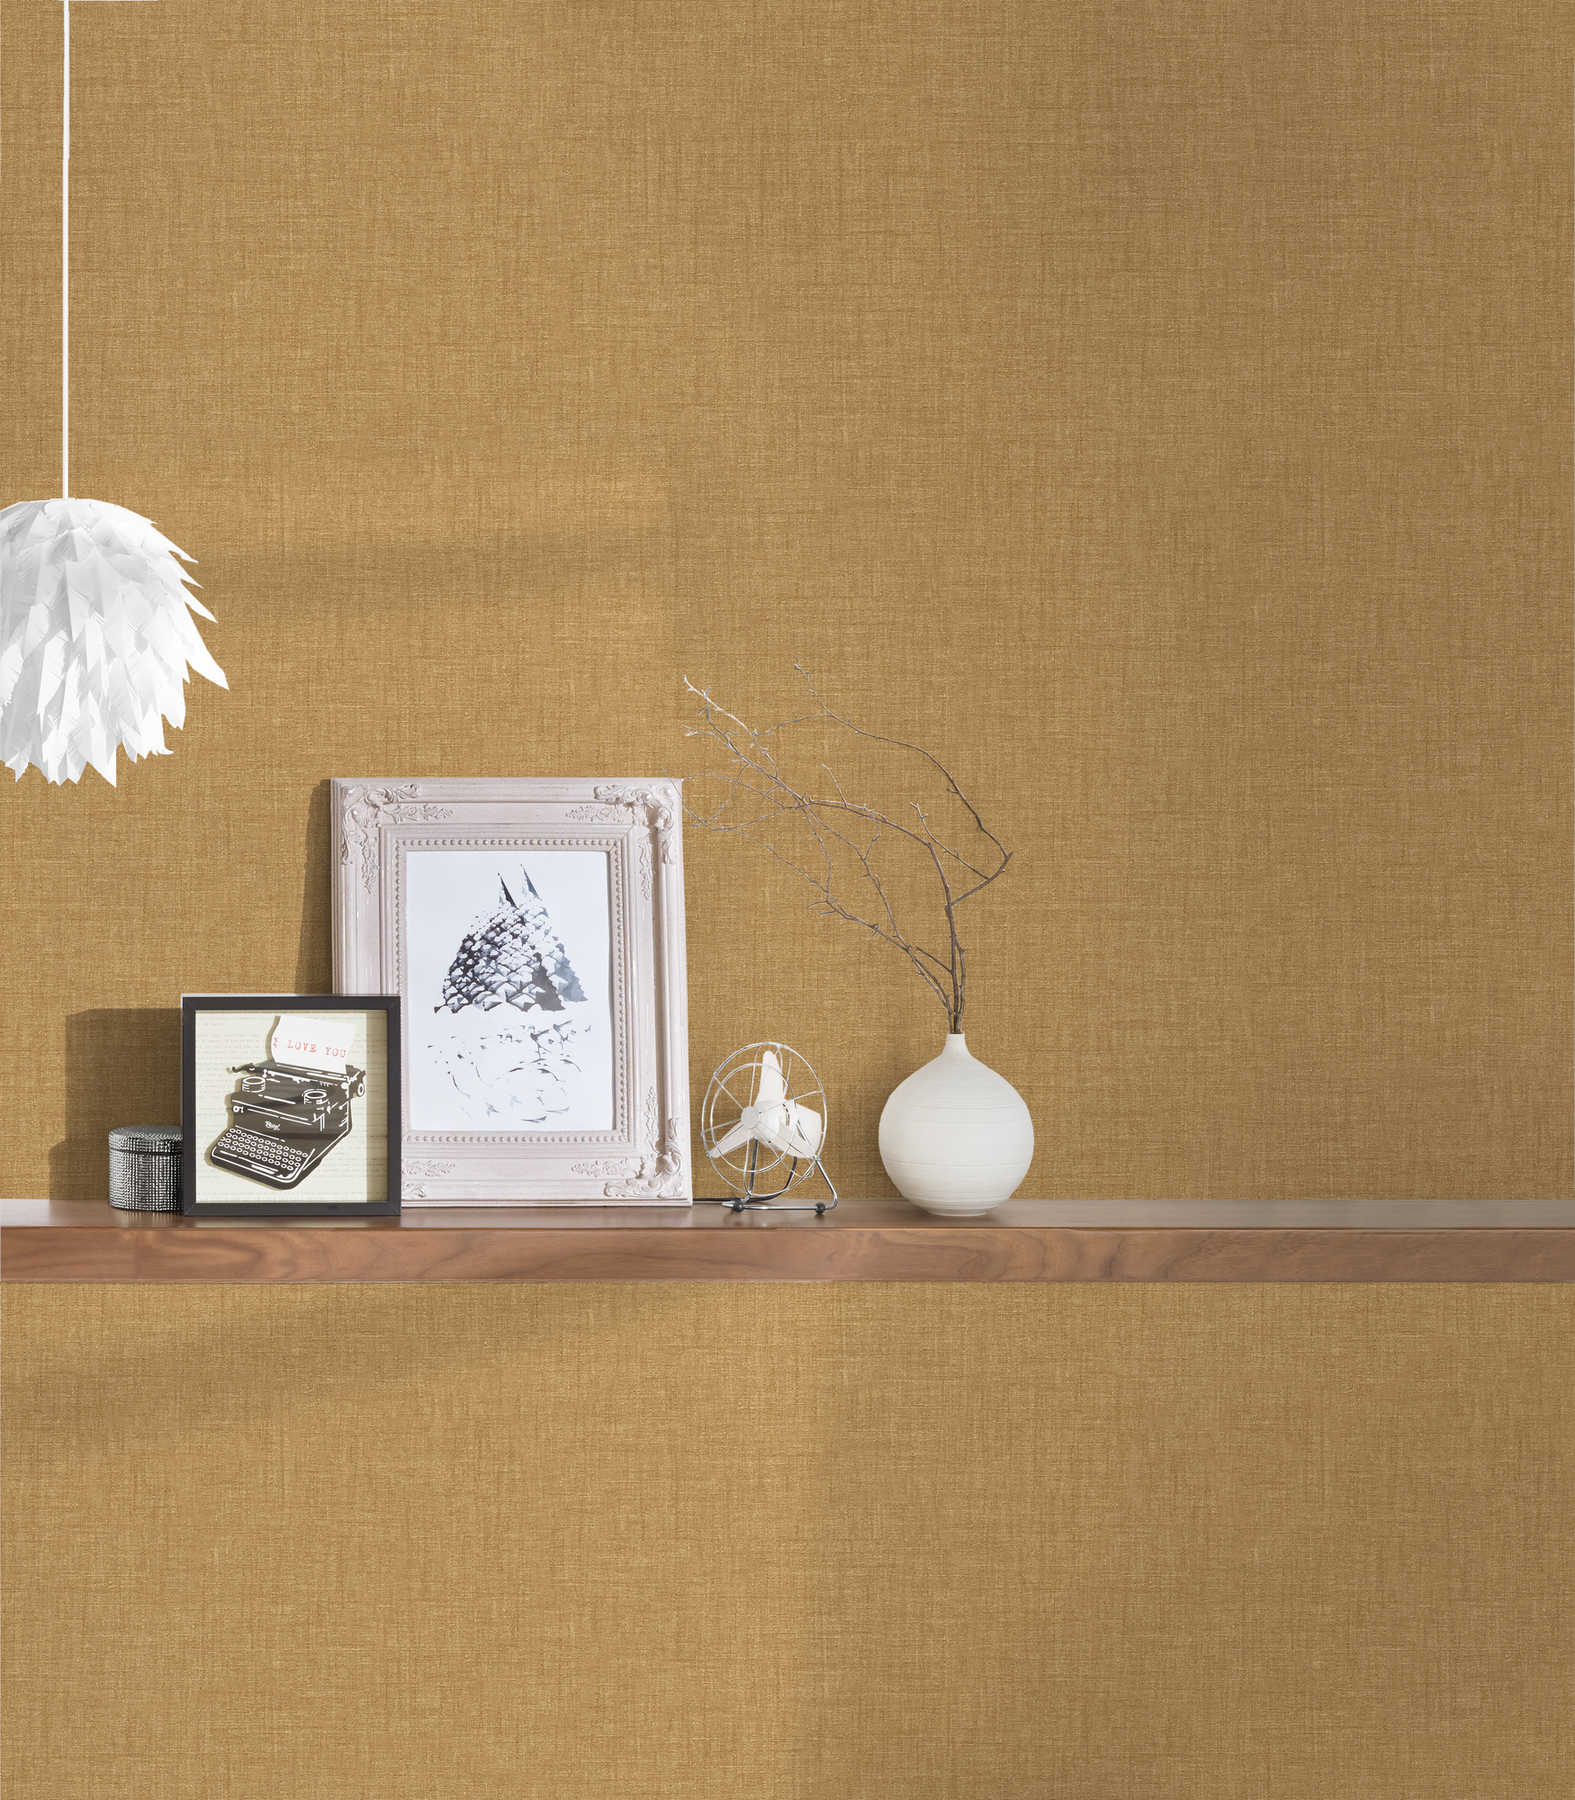             Golden VERSACE wallpaper in linen effect & shimmer - gold
        